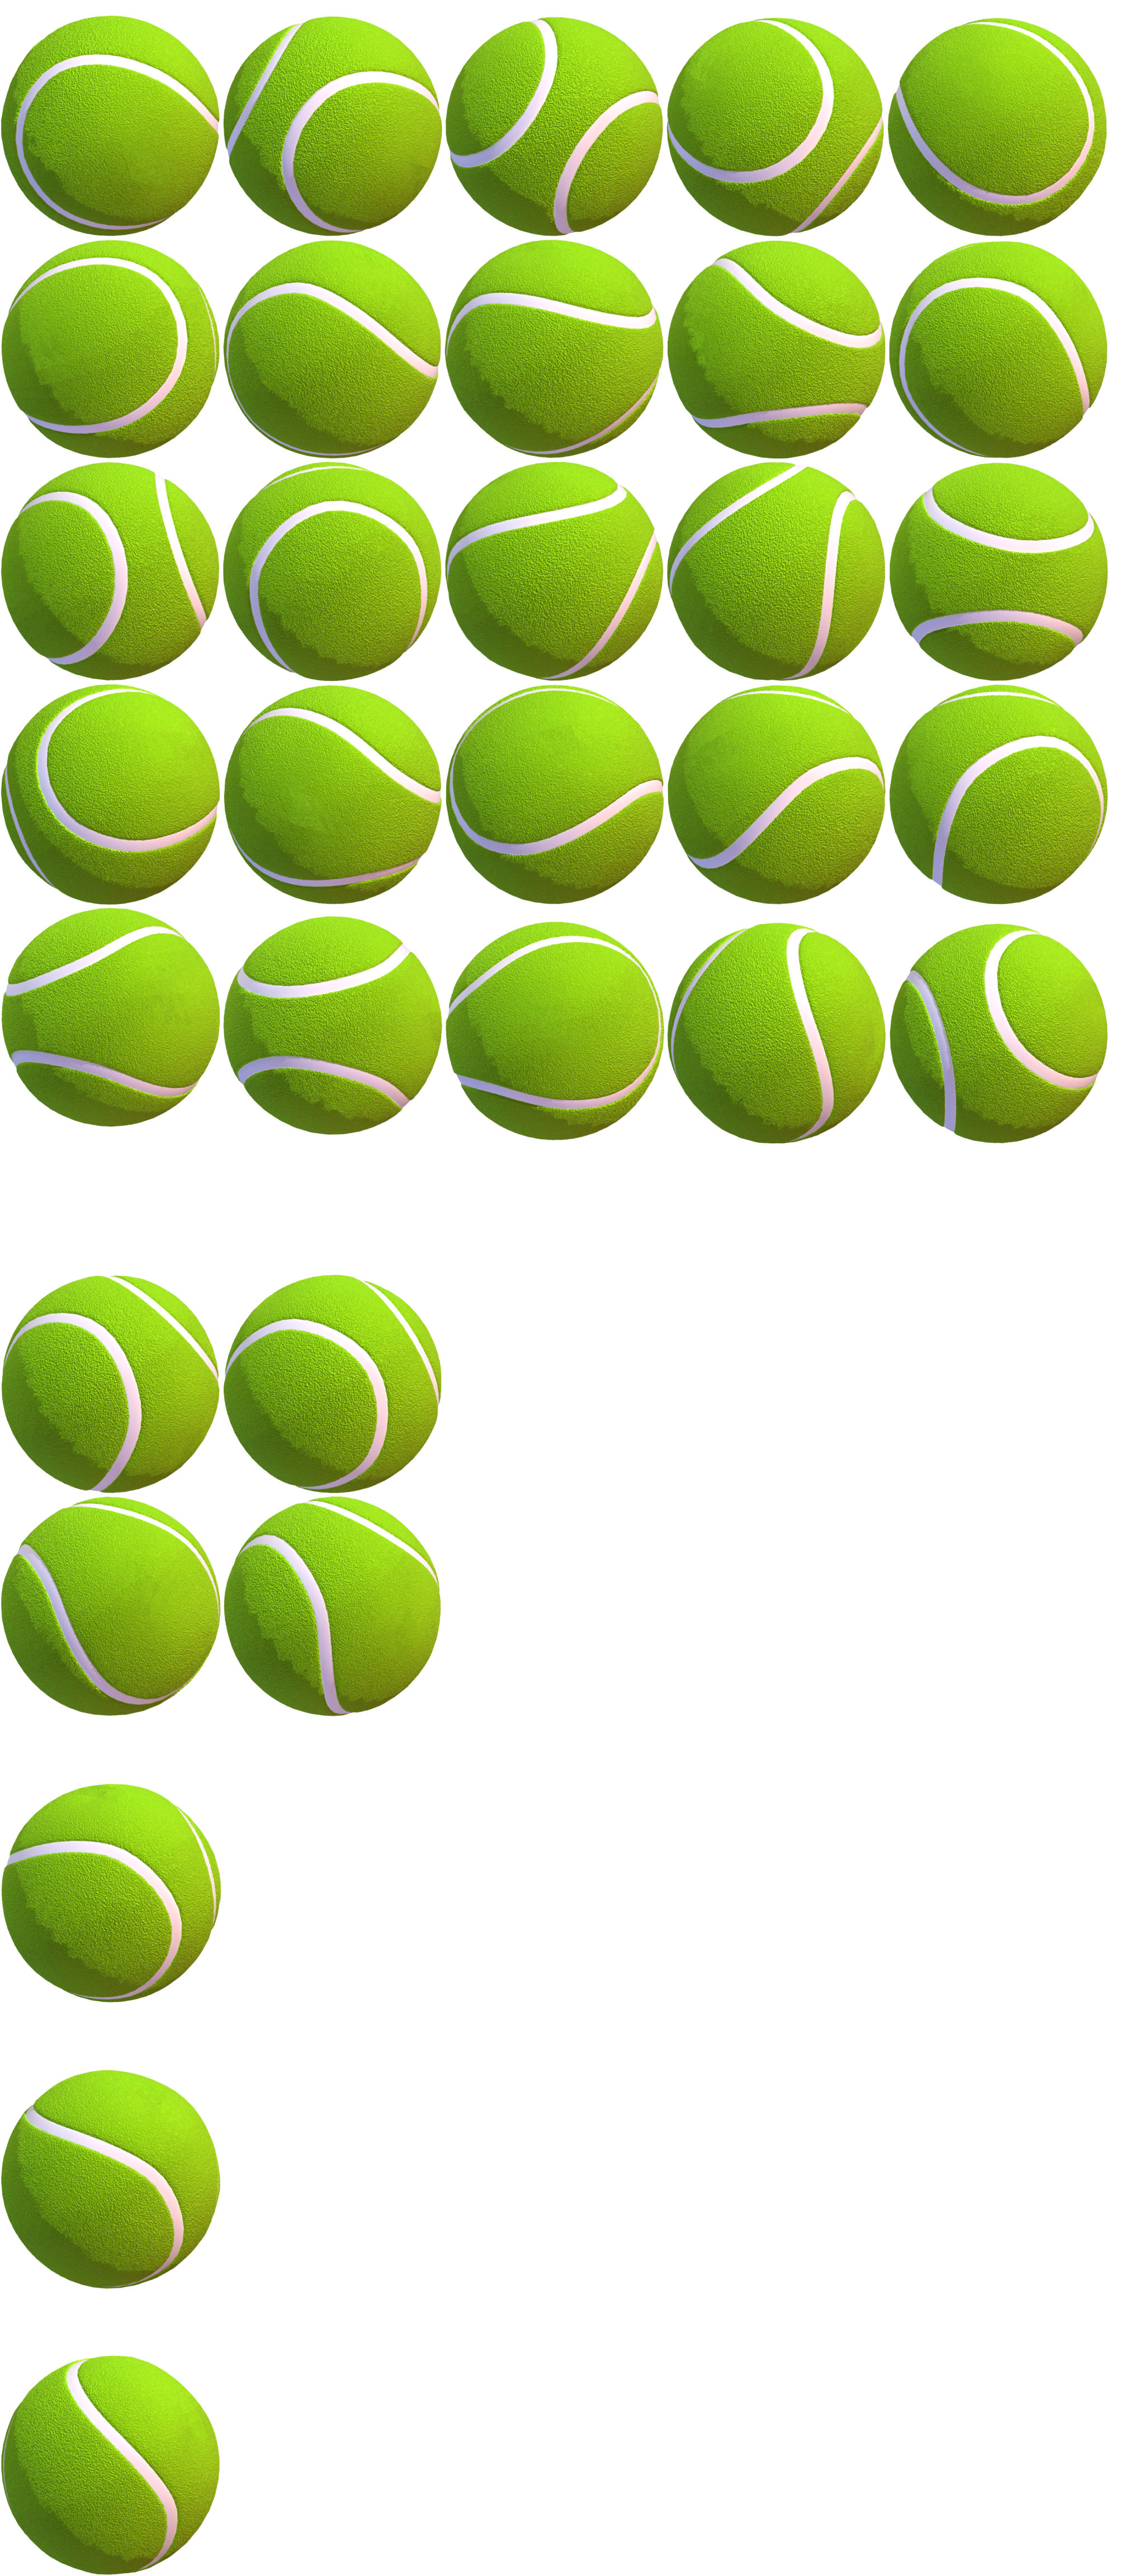 KID PIX 5: The STEAM Edition - Tennis Ball